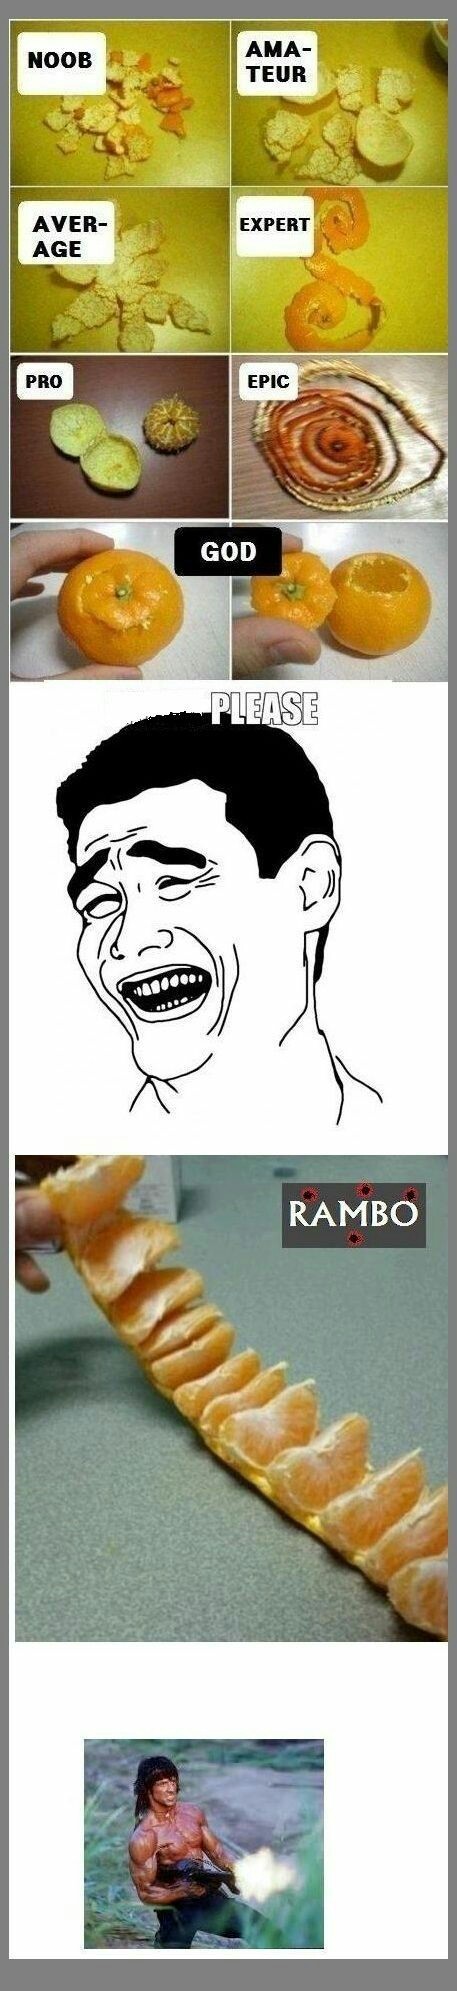 Rambo - meme